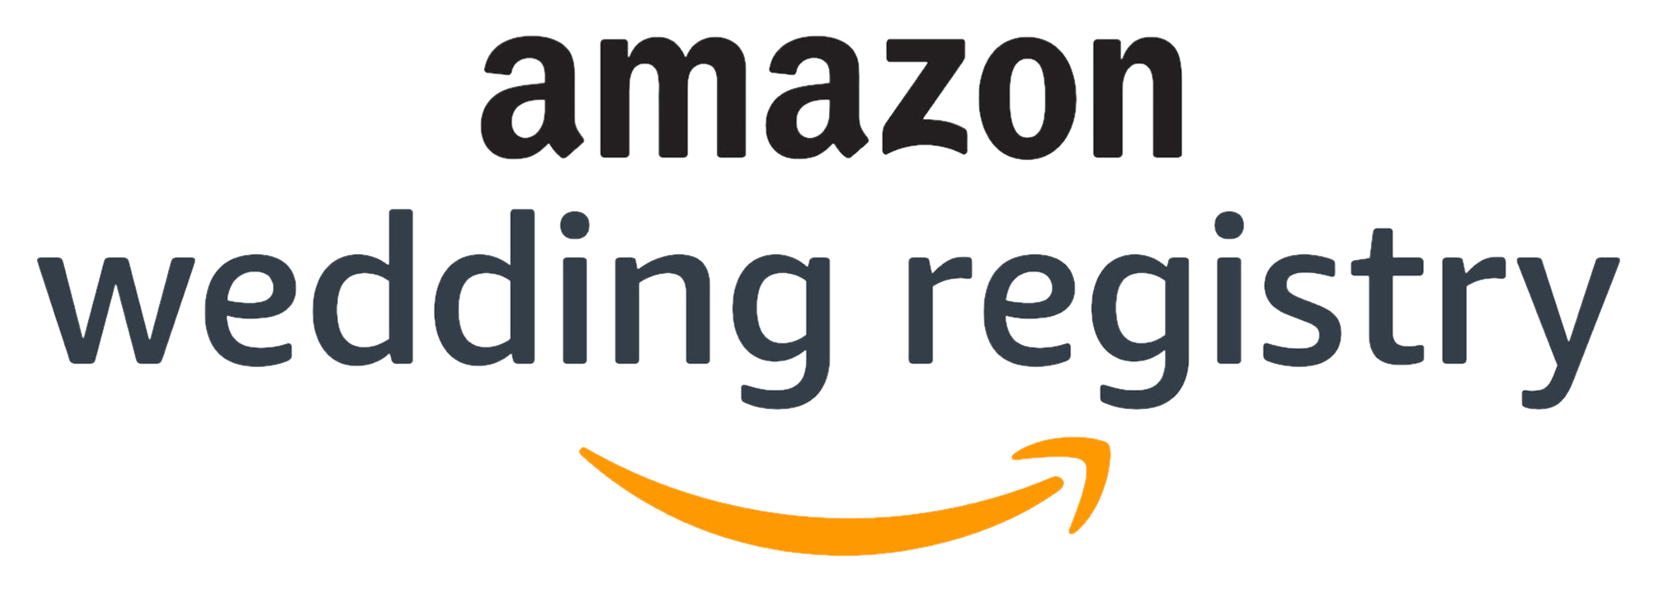 Visit our Amazon.com registry